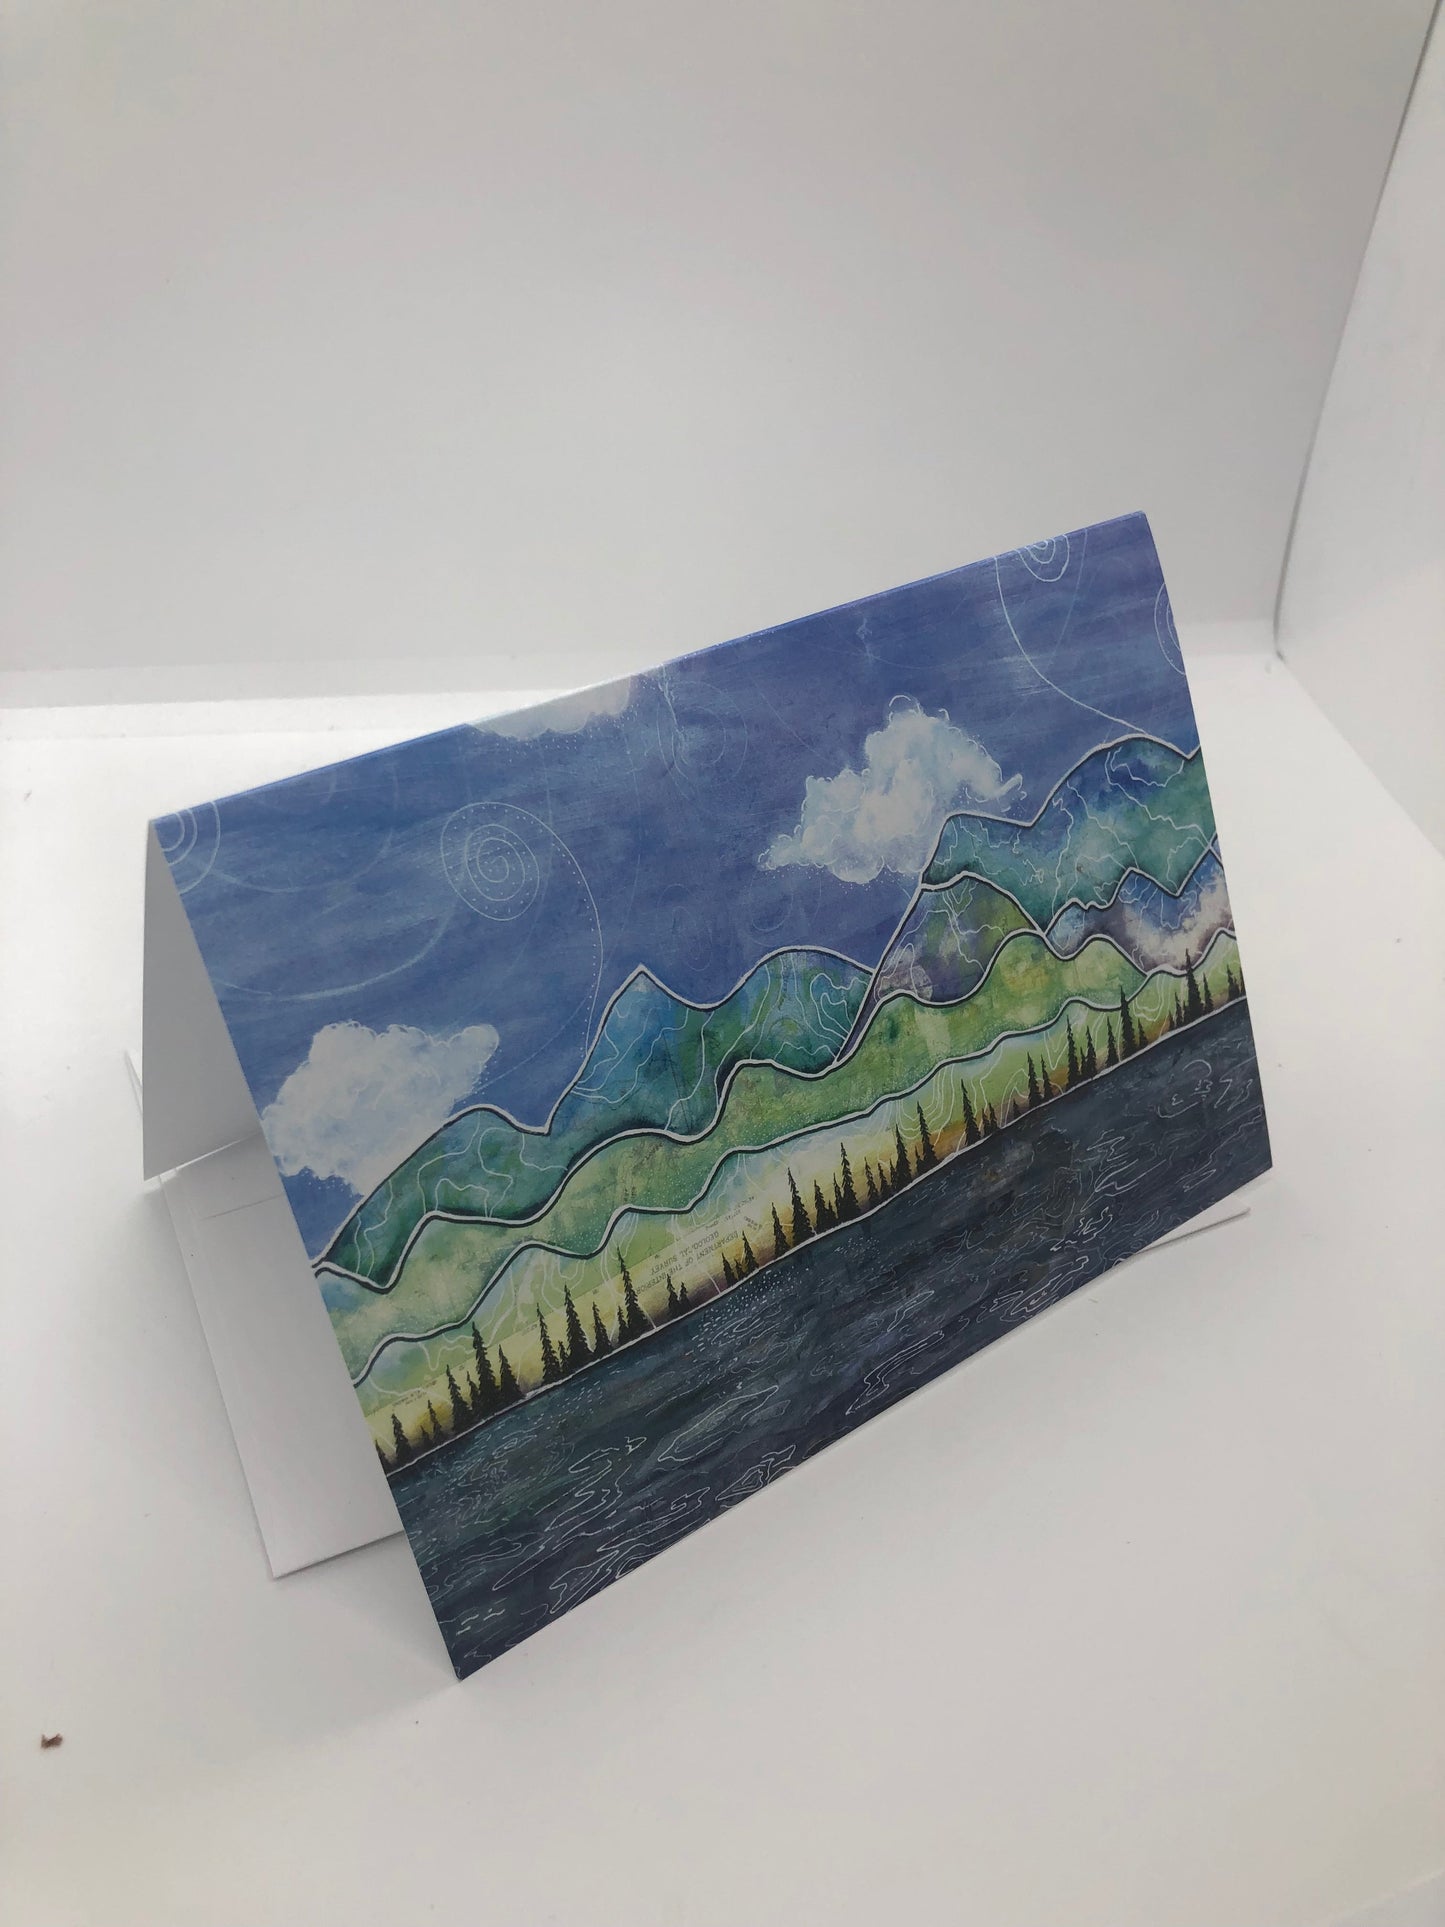 " Cottonwood Peak " Blank Greeting Card